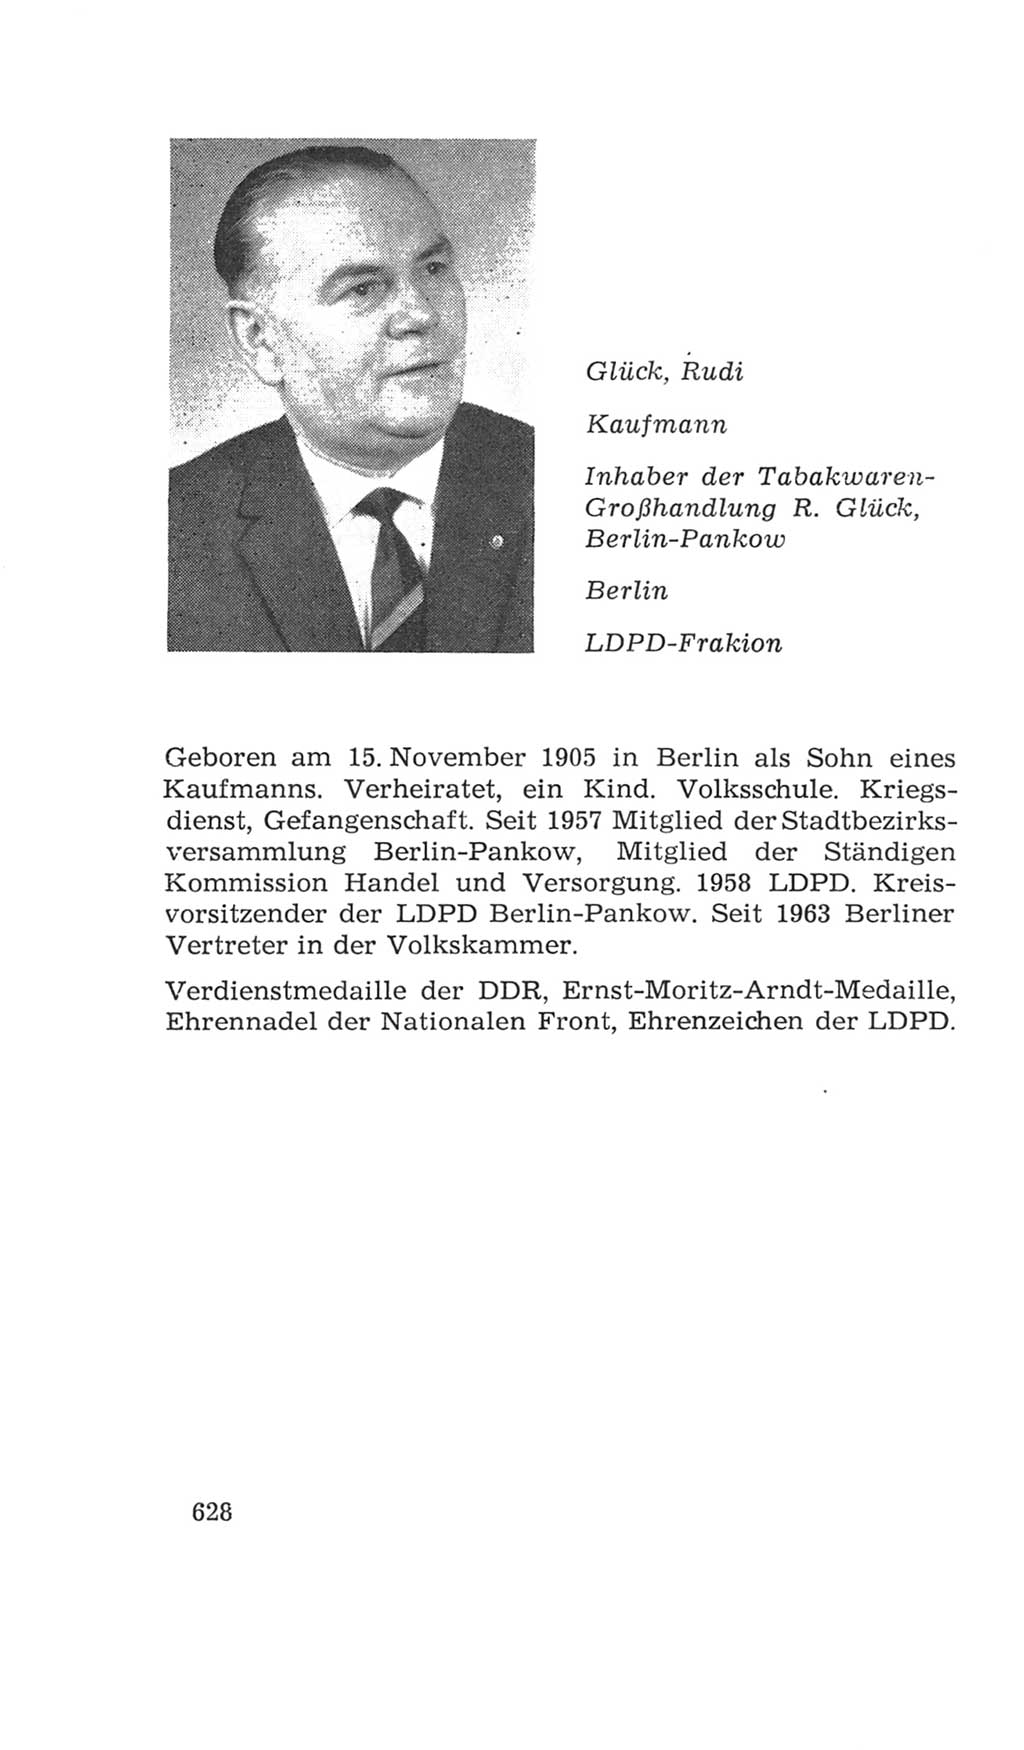 Volkskammer (VK) der Deutschen Demokratischen Republik (DDR), 4. Wahlperiode 1963-1967, Seite 628 (VK. DDR 4. WP. 1963-1967, S. 628)